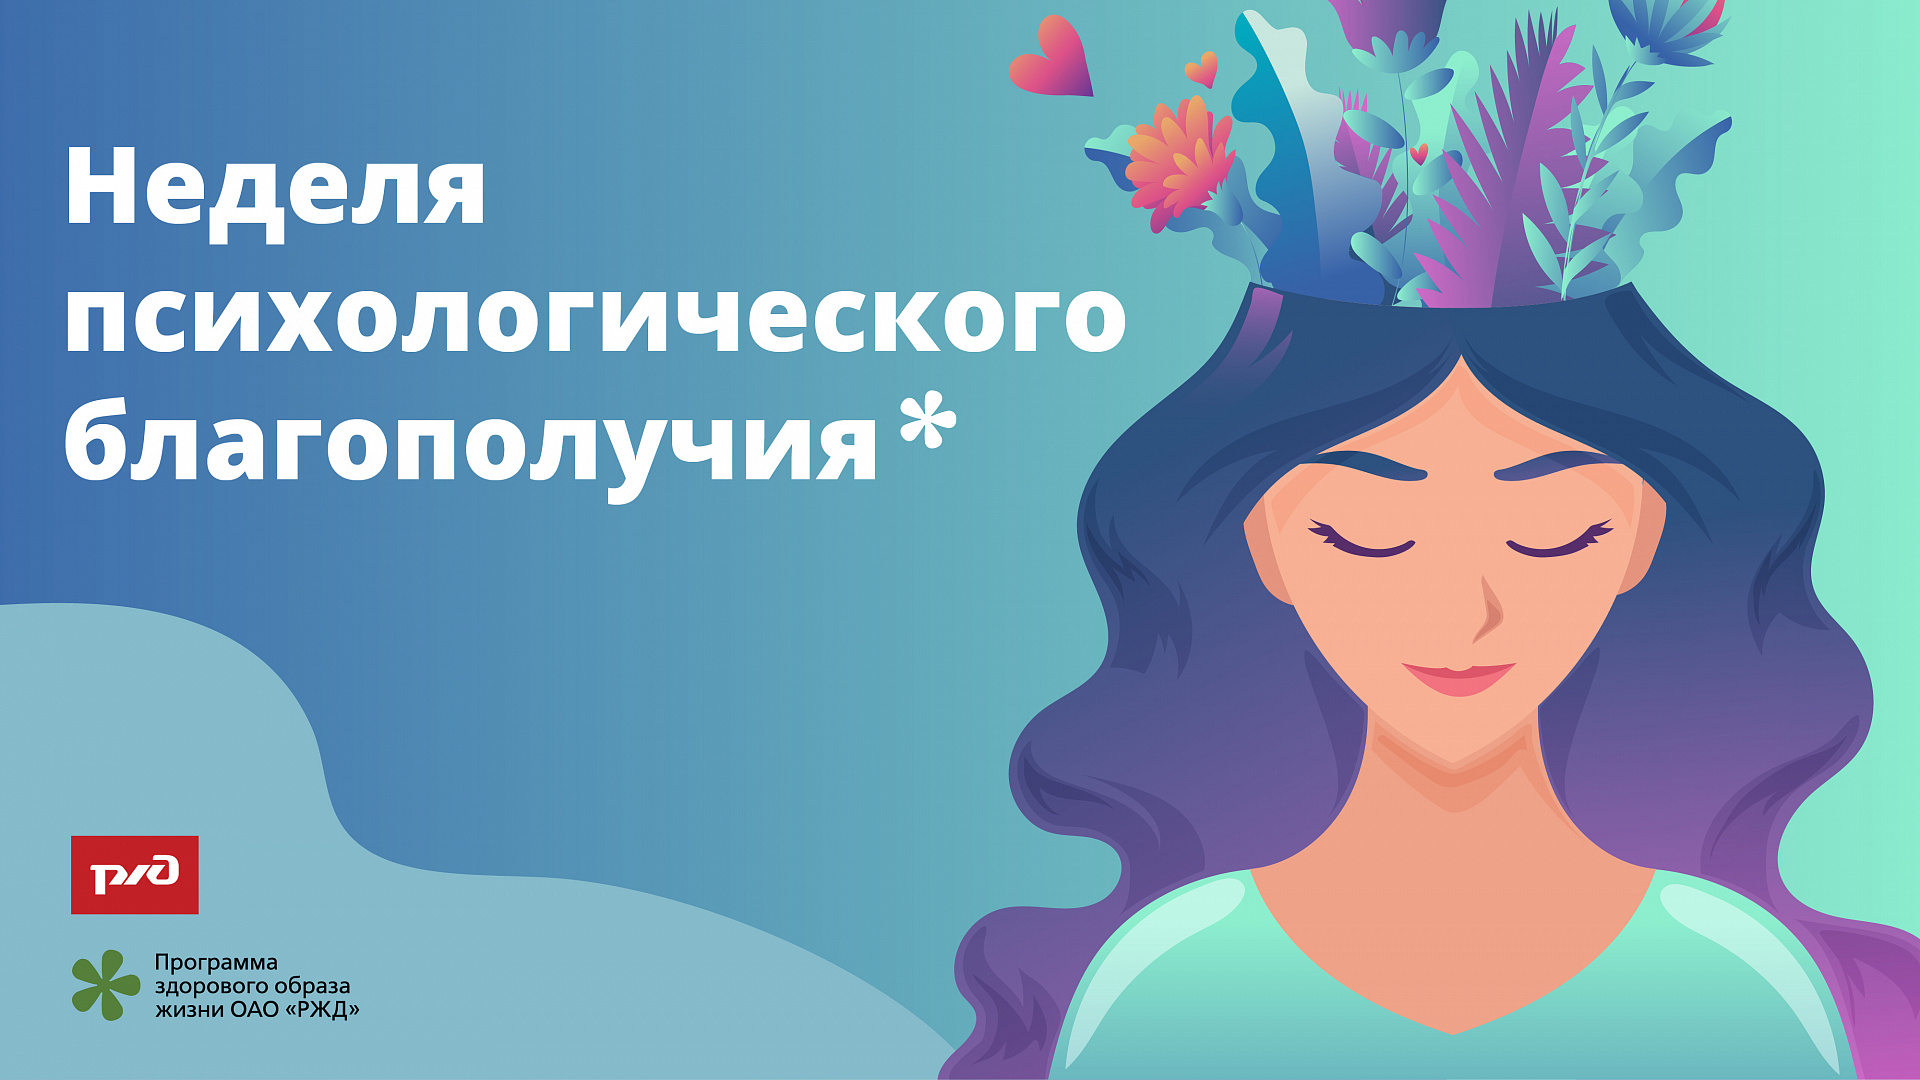  «Неделя психологического здоровья» в ЧУЗ "РЖД-Медицина" г. Уссурийск